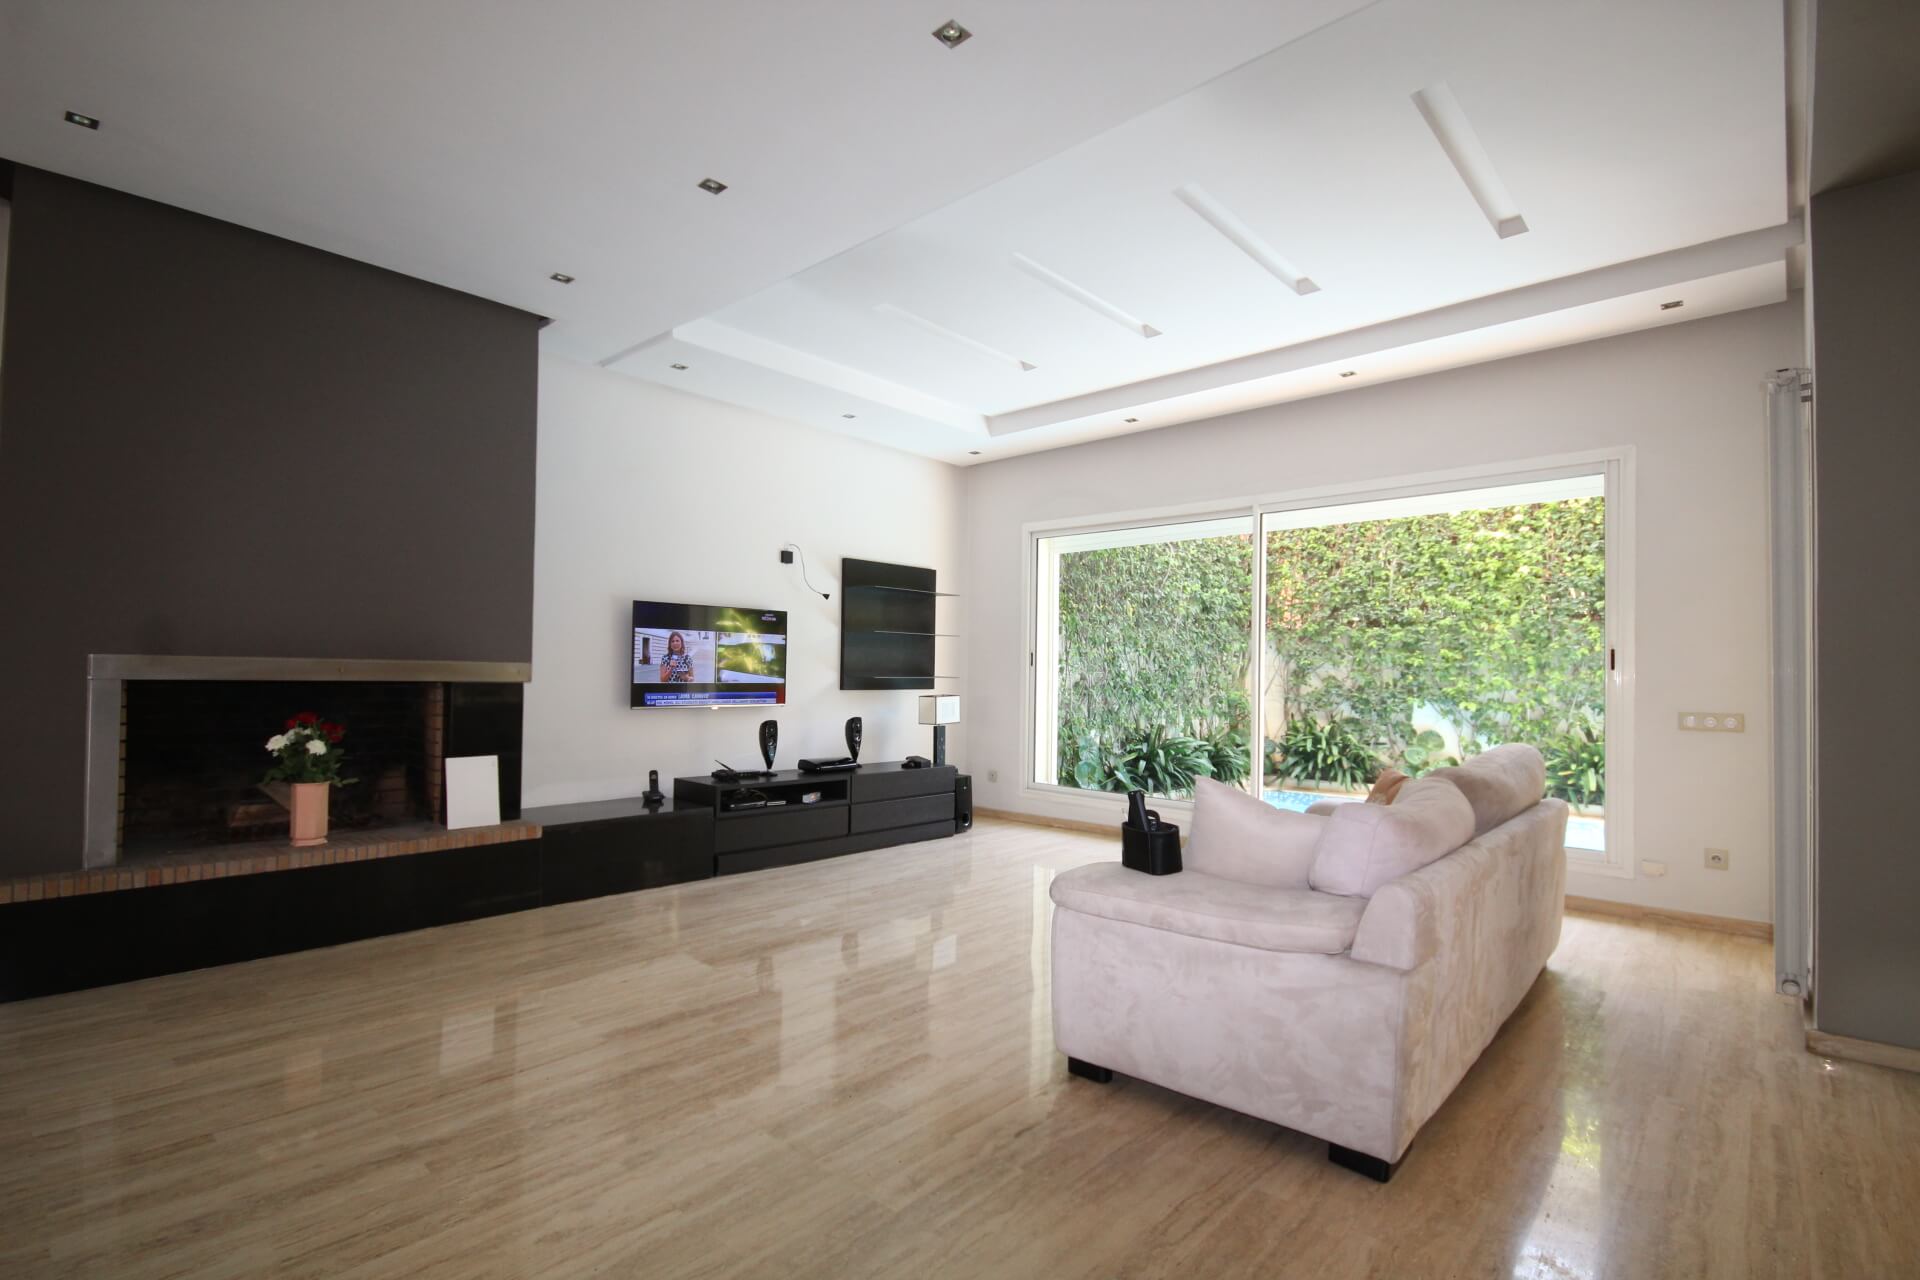 Villa de 5 chambres à vendre vide ou meublée sur Terrain 371 m² surface habitable 400 m²